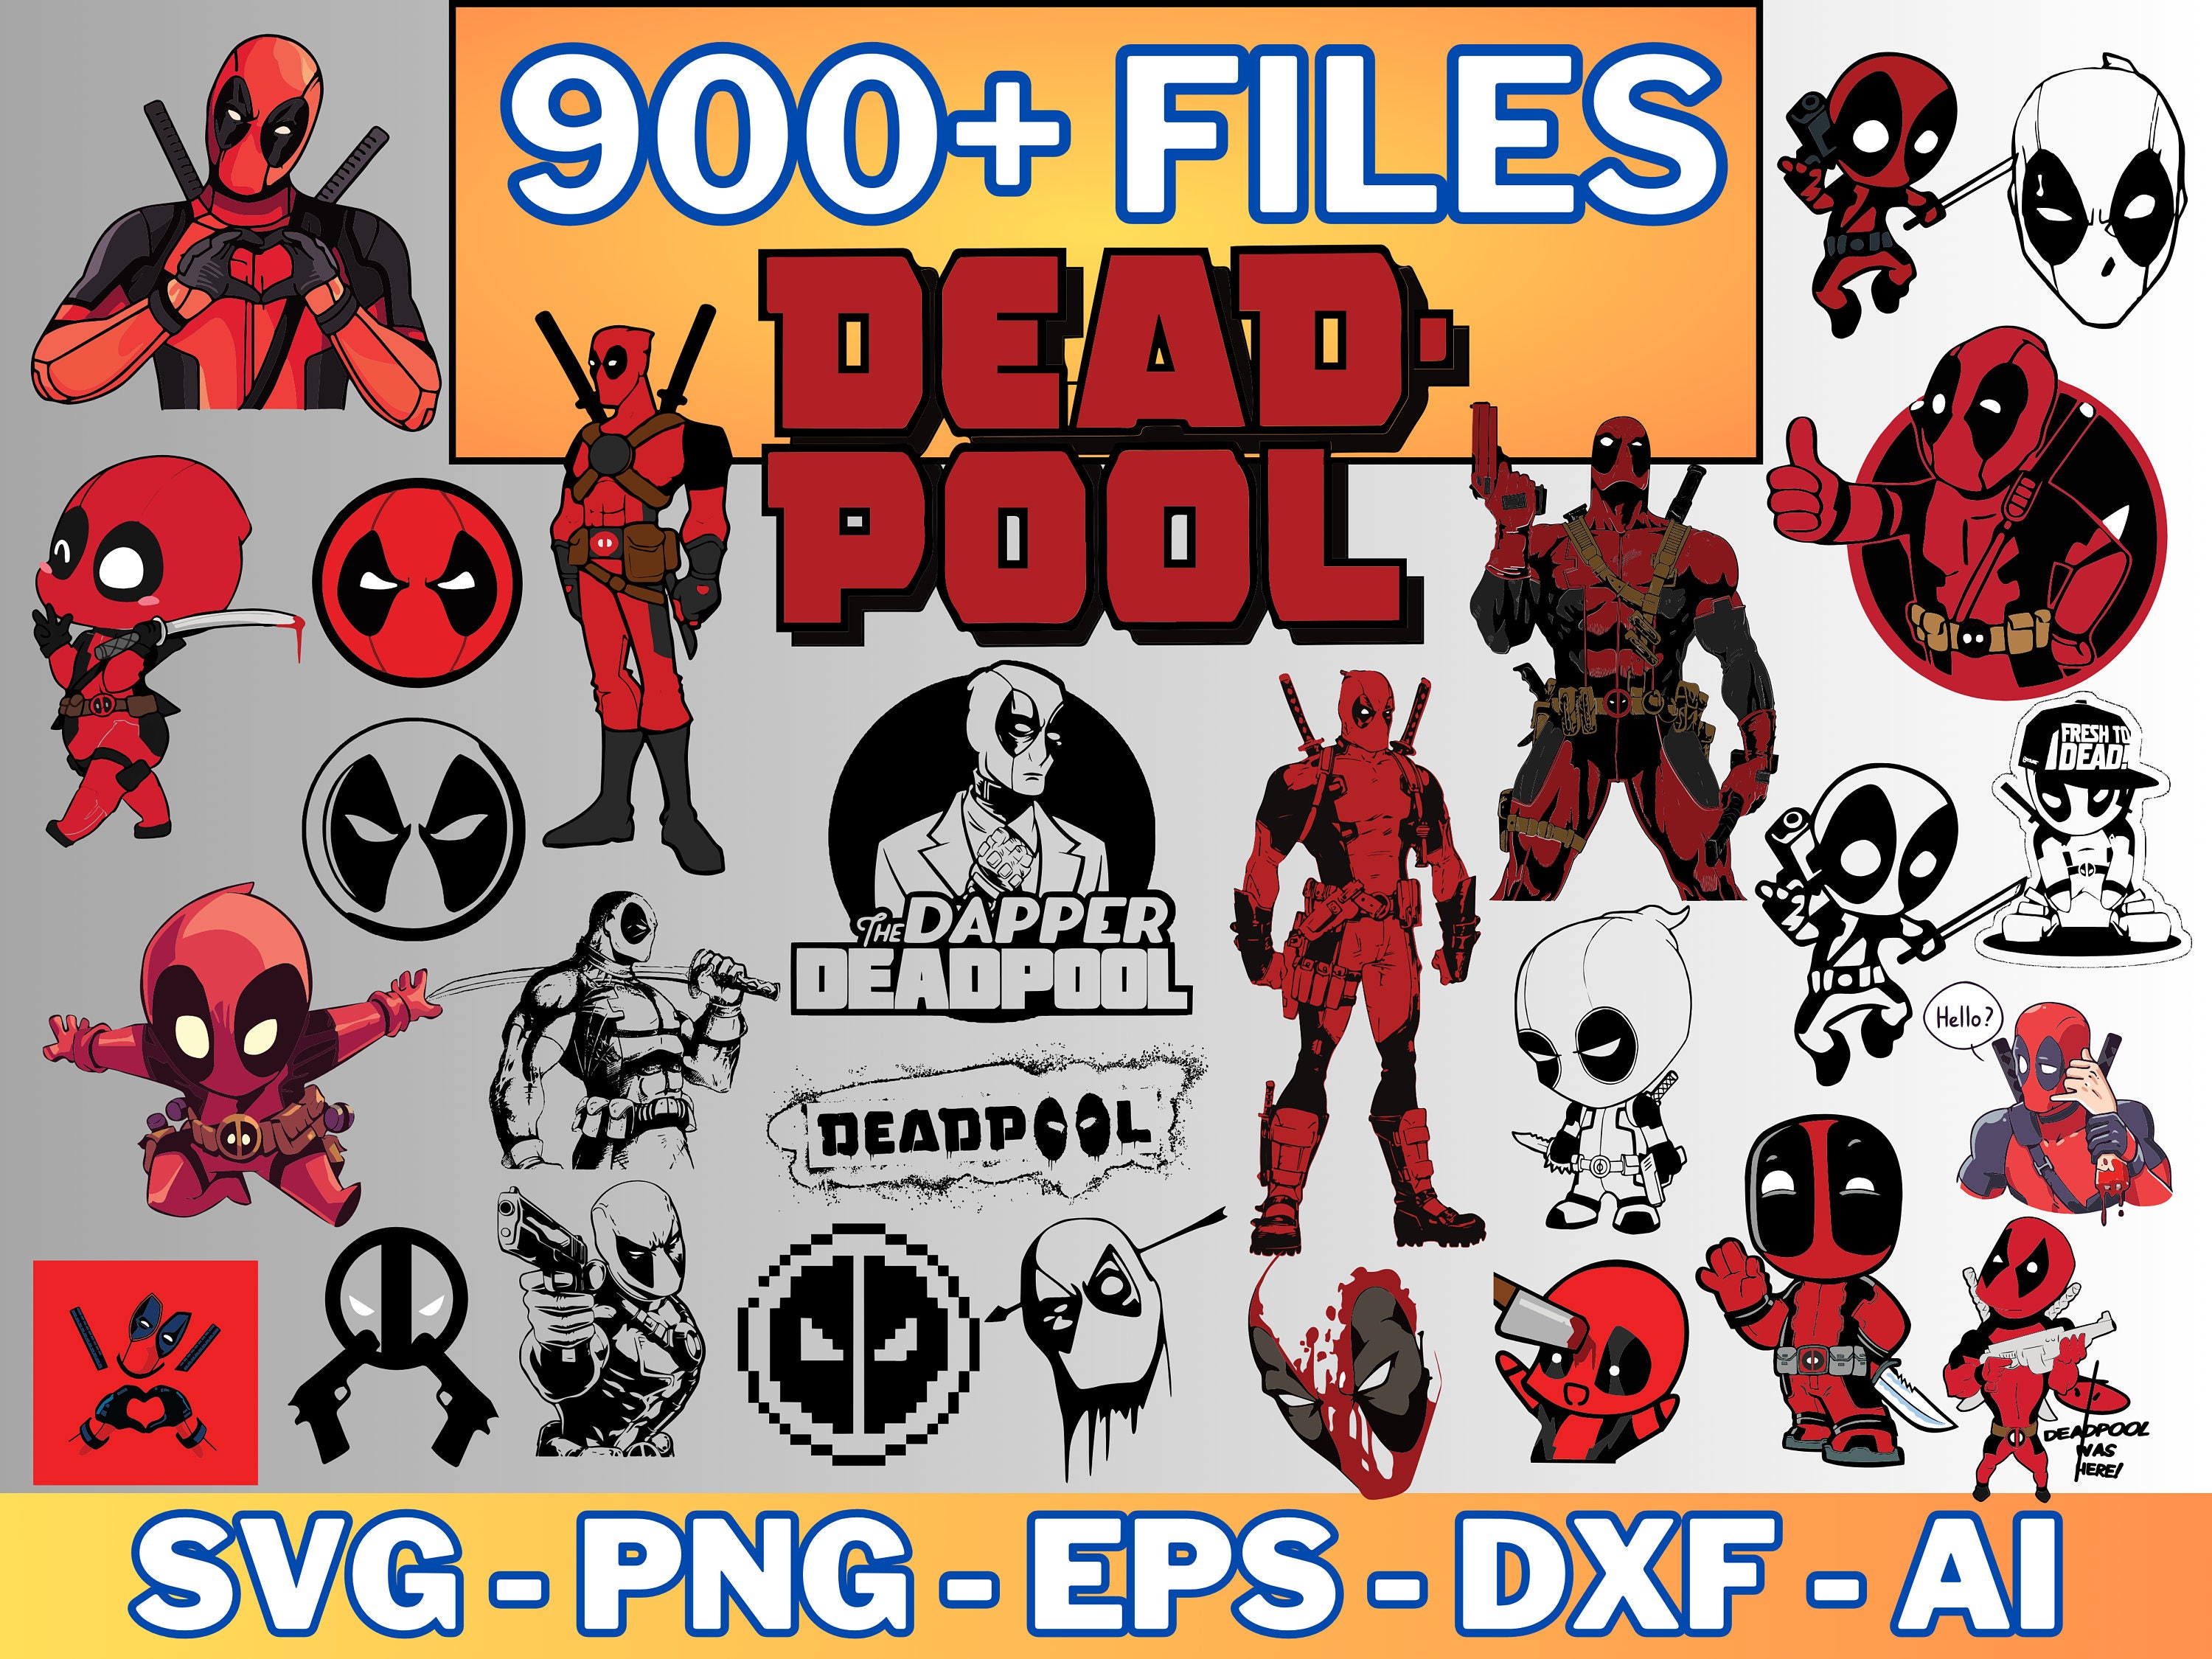 180 Dead Pool Bundle SVG, Superhero Svg, Marvel svg, Spider - Inspire Uplift